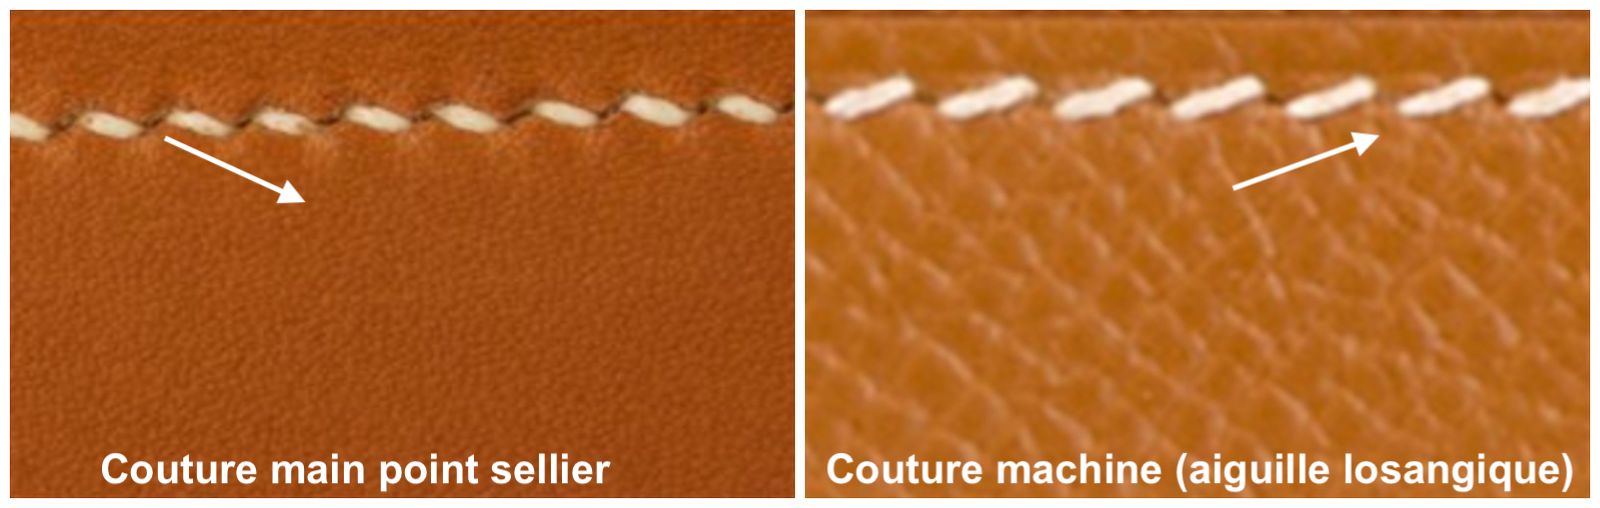 Comparaison entre une couture main point sellier à gauche et une piqure machine à droite. (Source : Sartorialisme)